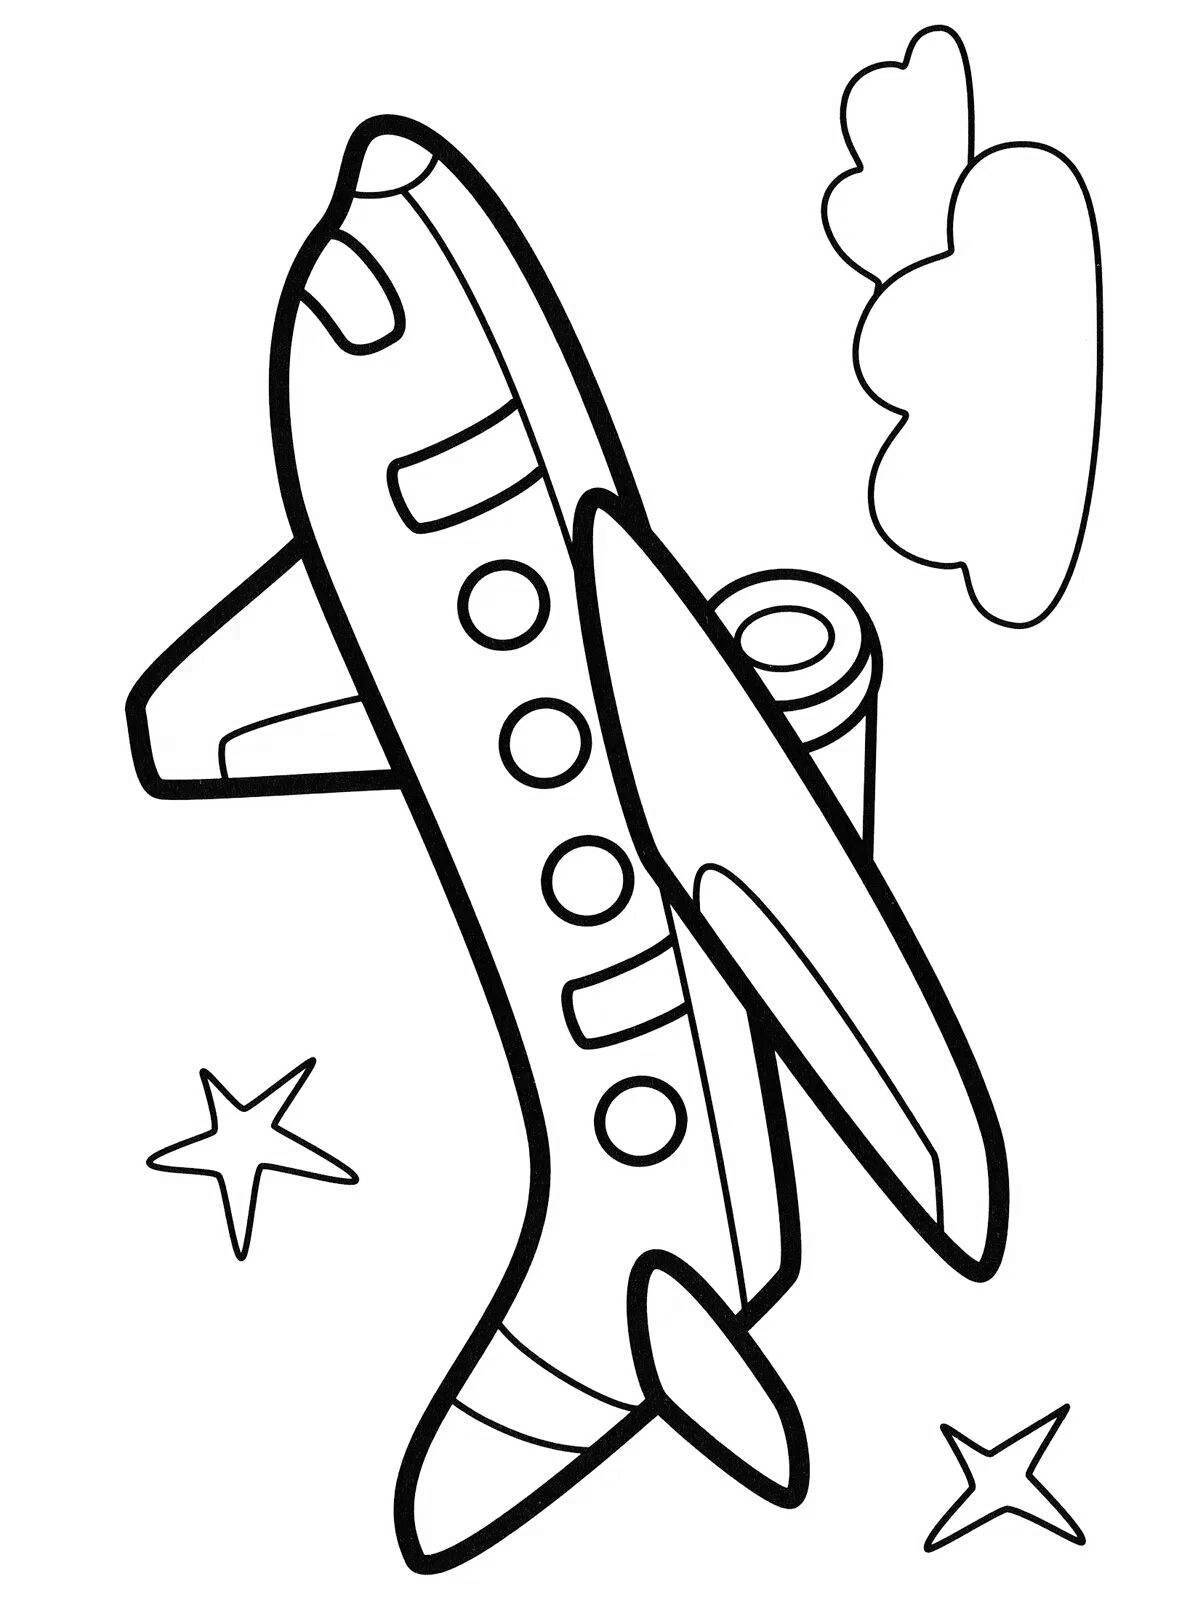 Увлекательная раскраска самолетов для детей 5-6 лет